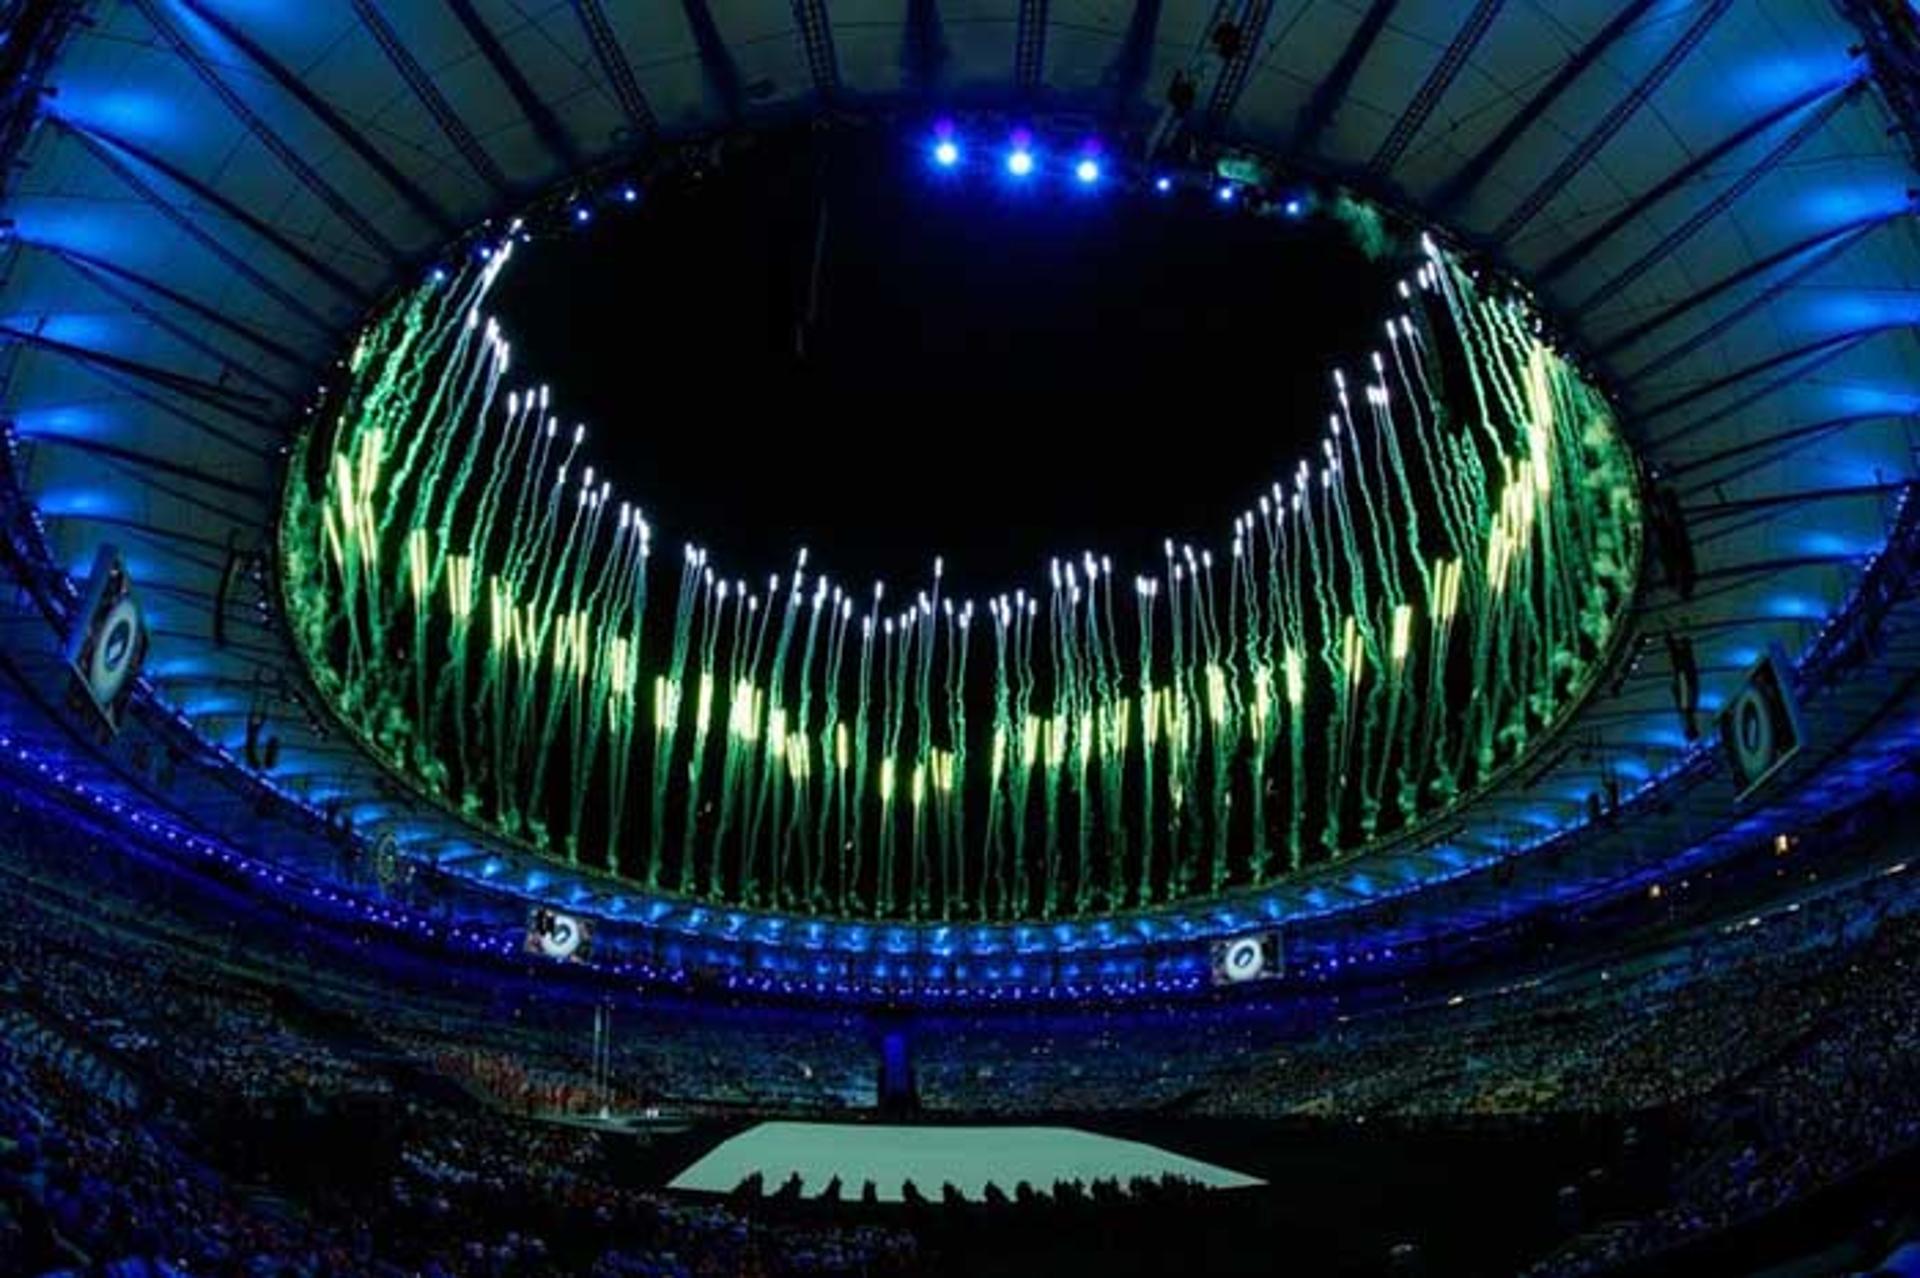 Encerramento dos Jogos Rio 2016 terá festa brasileira, com alta diversidade musical.